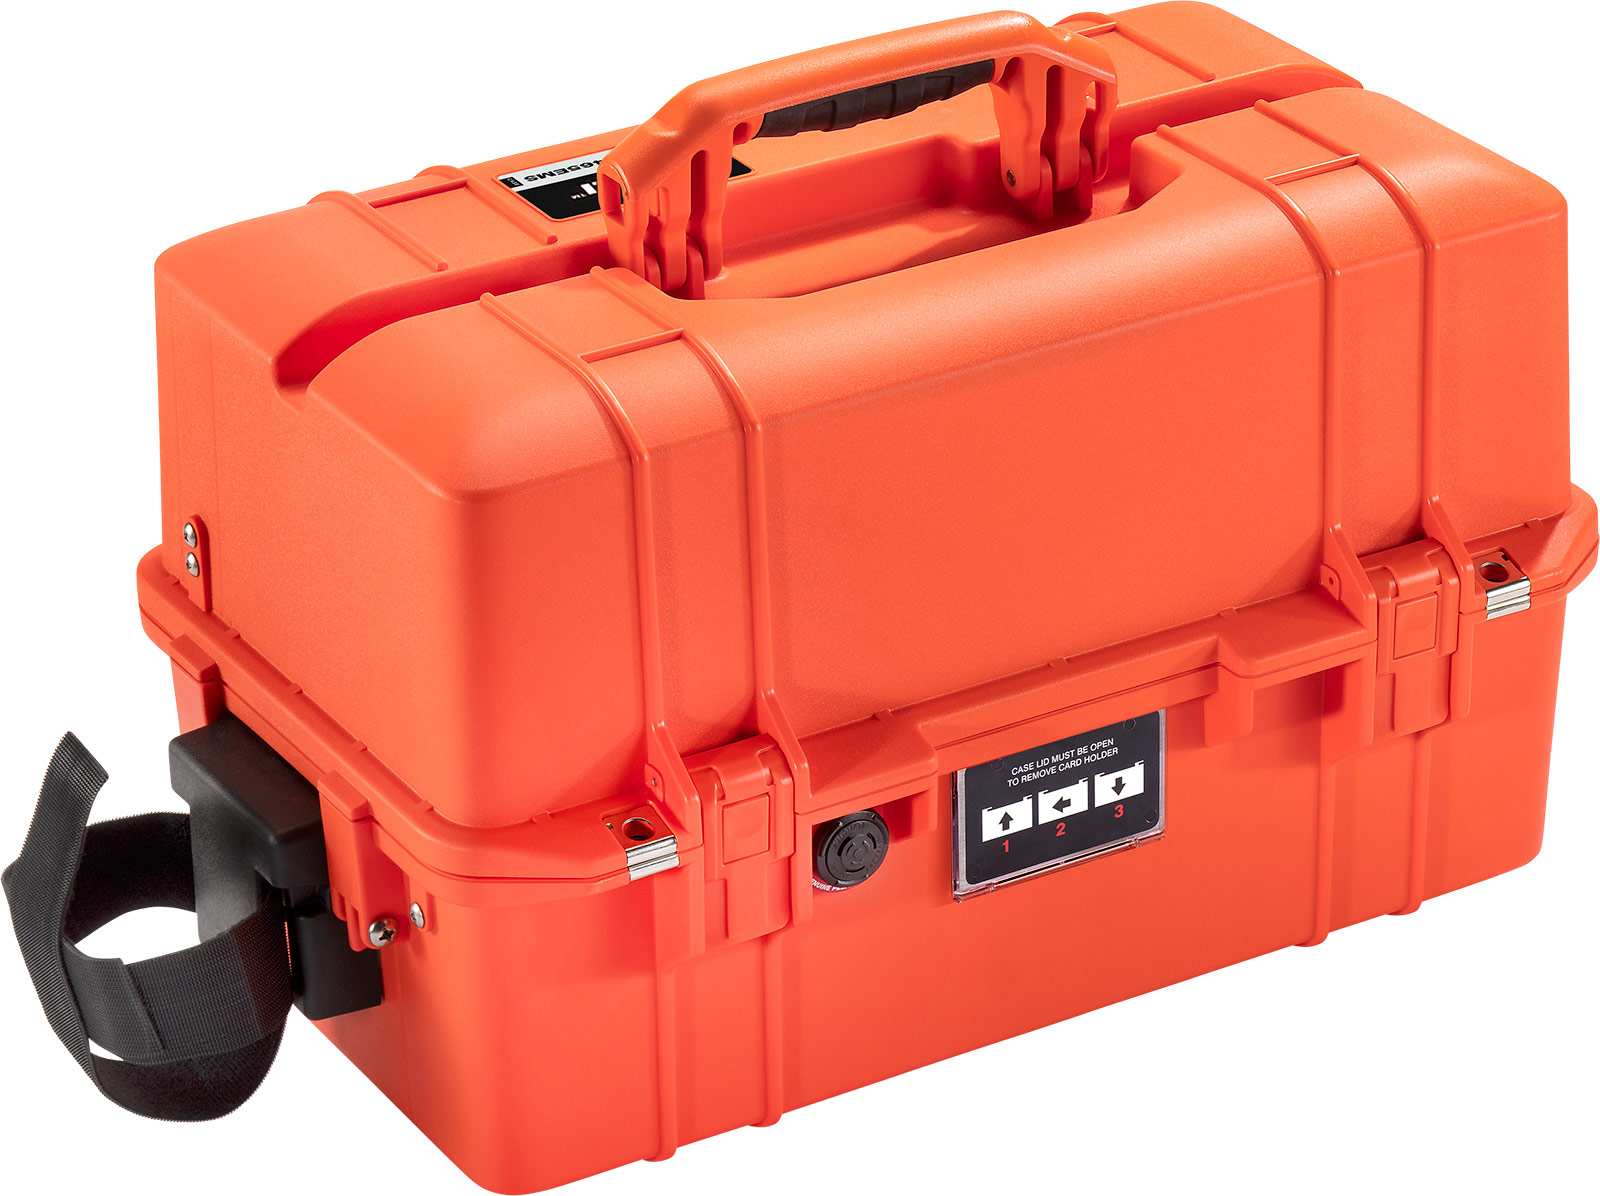 Air EMS Case 1465EMS oranžový s EMS přepážkami, min. odběr 20ks